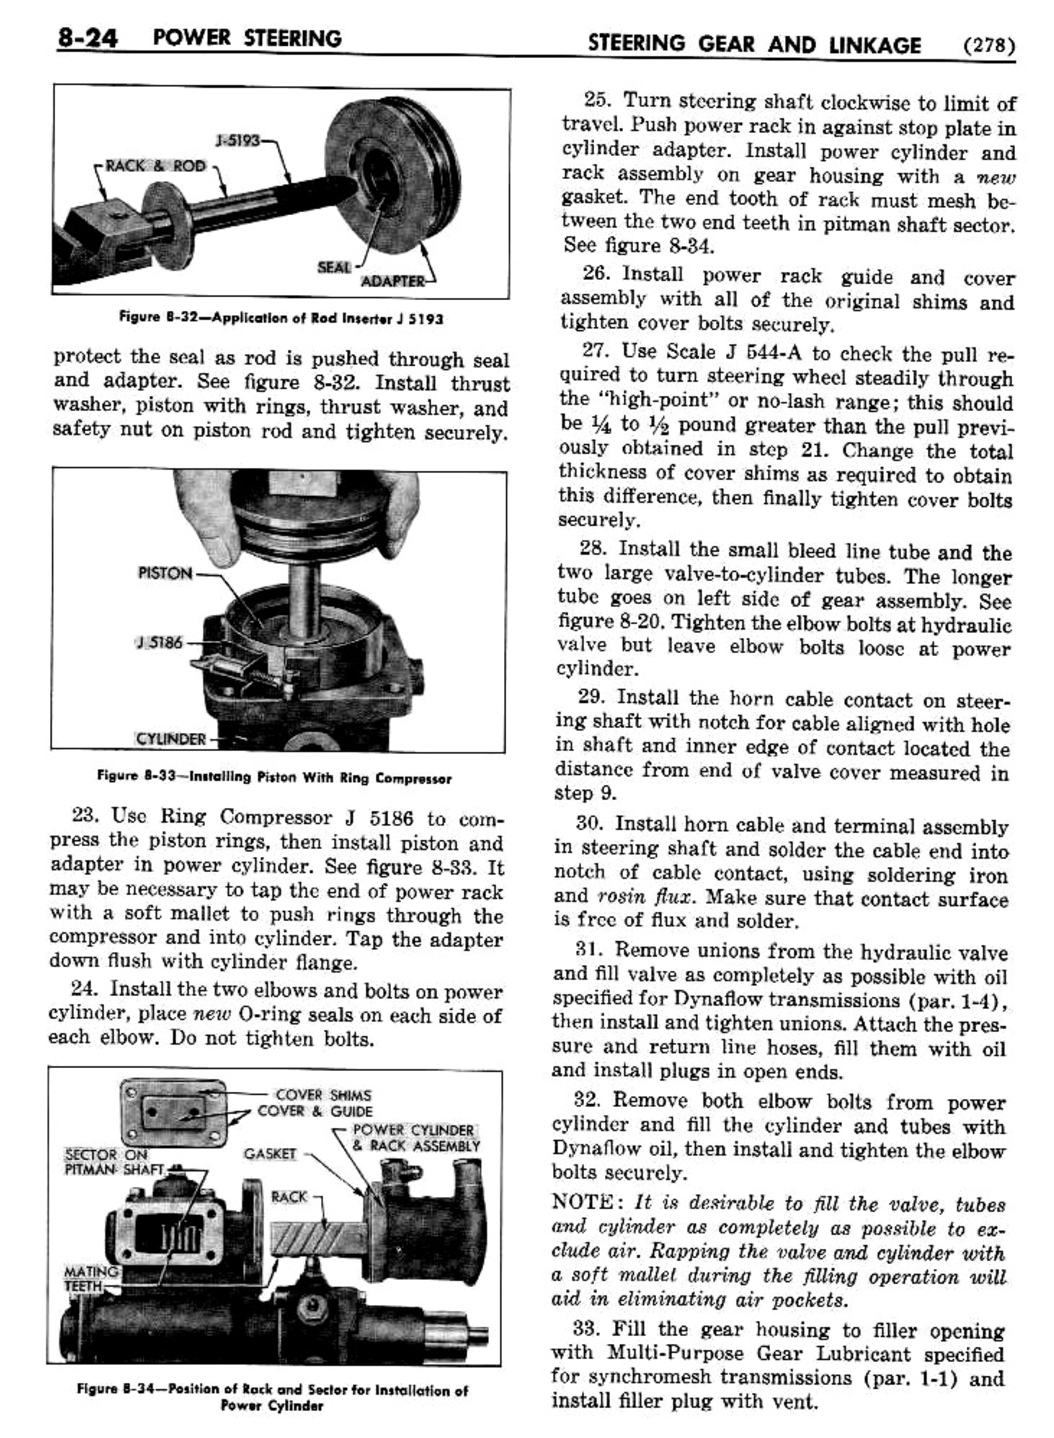 n_09 1954 Buick Shop Manual - Steering-024-024.jpg